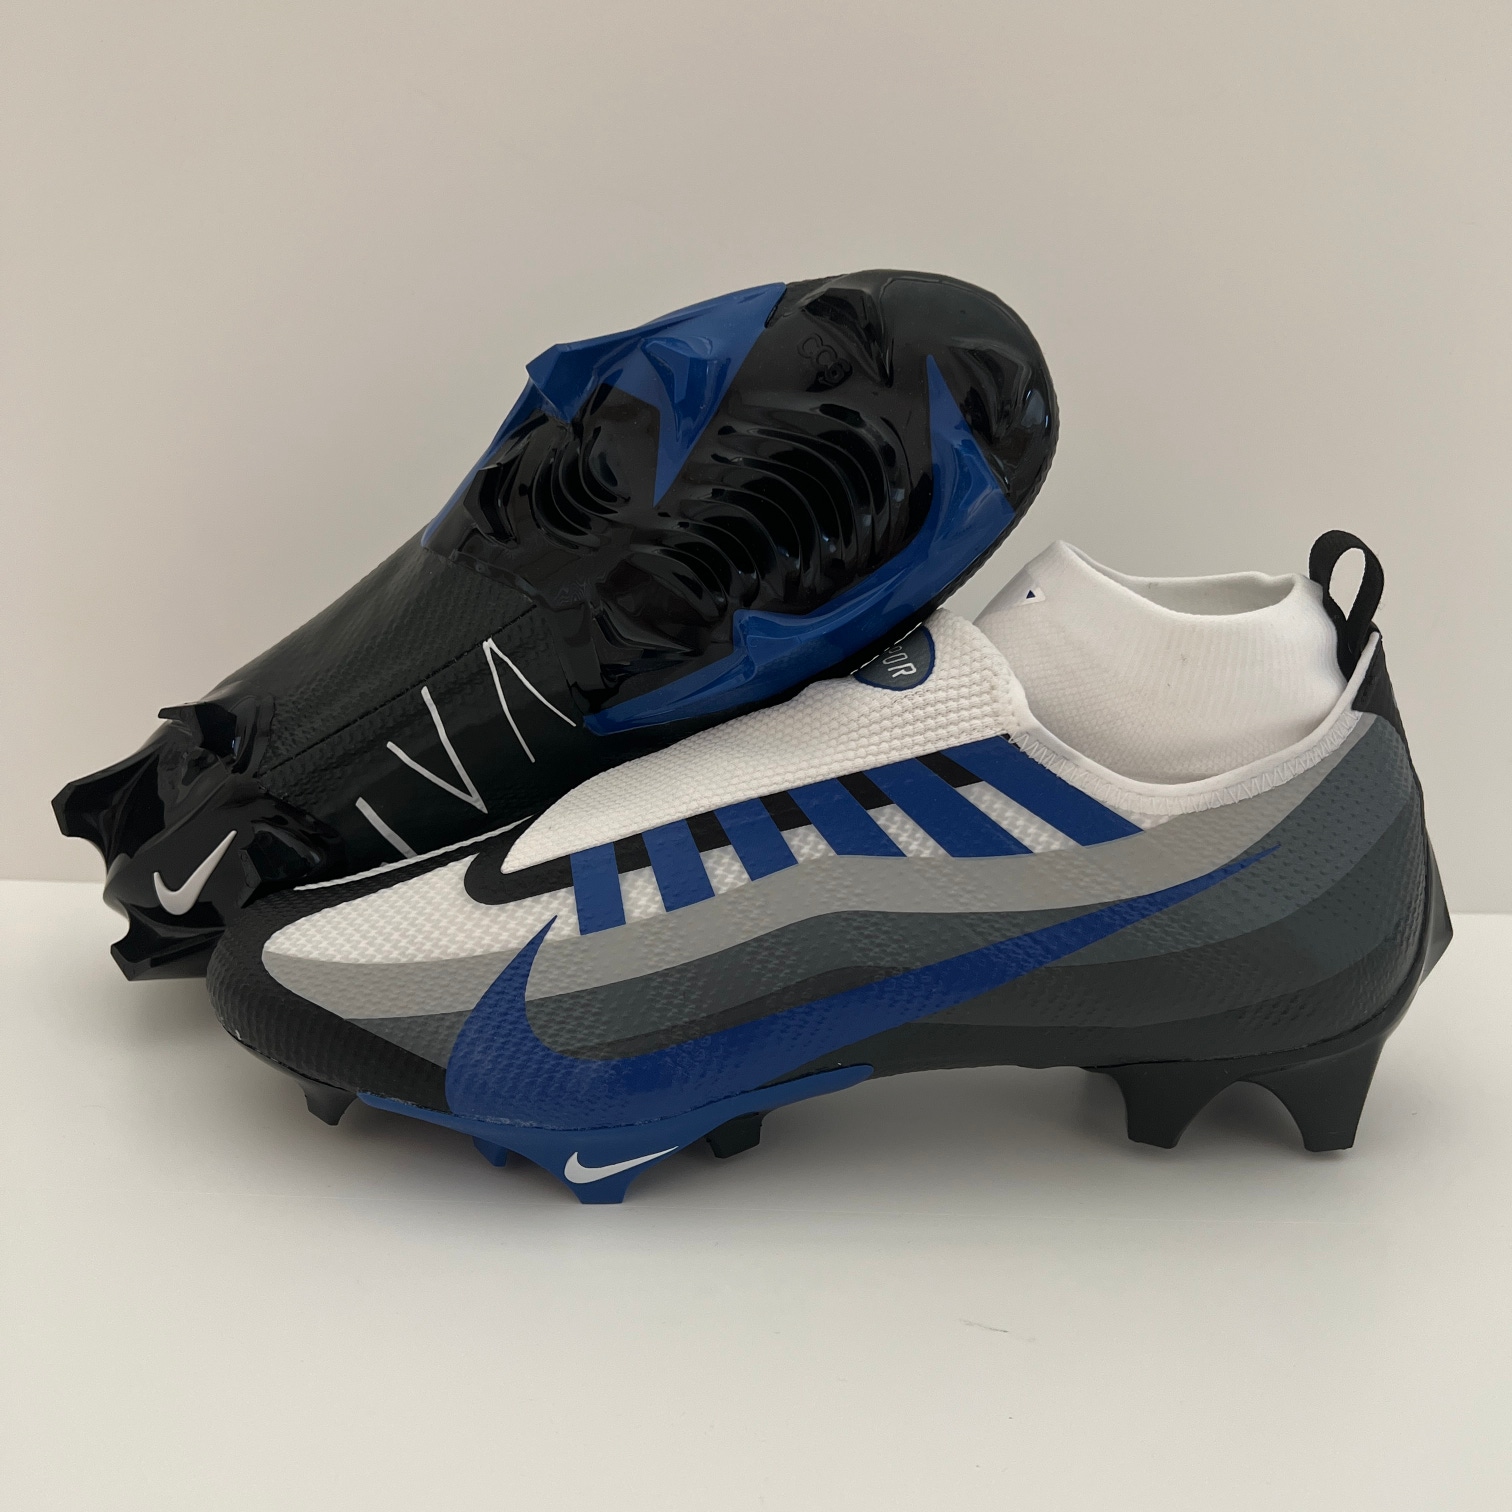 (Size 13) Nike Vapor Edge Pro 360 'Black Game Royal' Lacrosse/Football Cleats